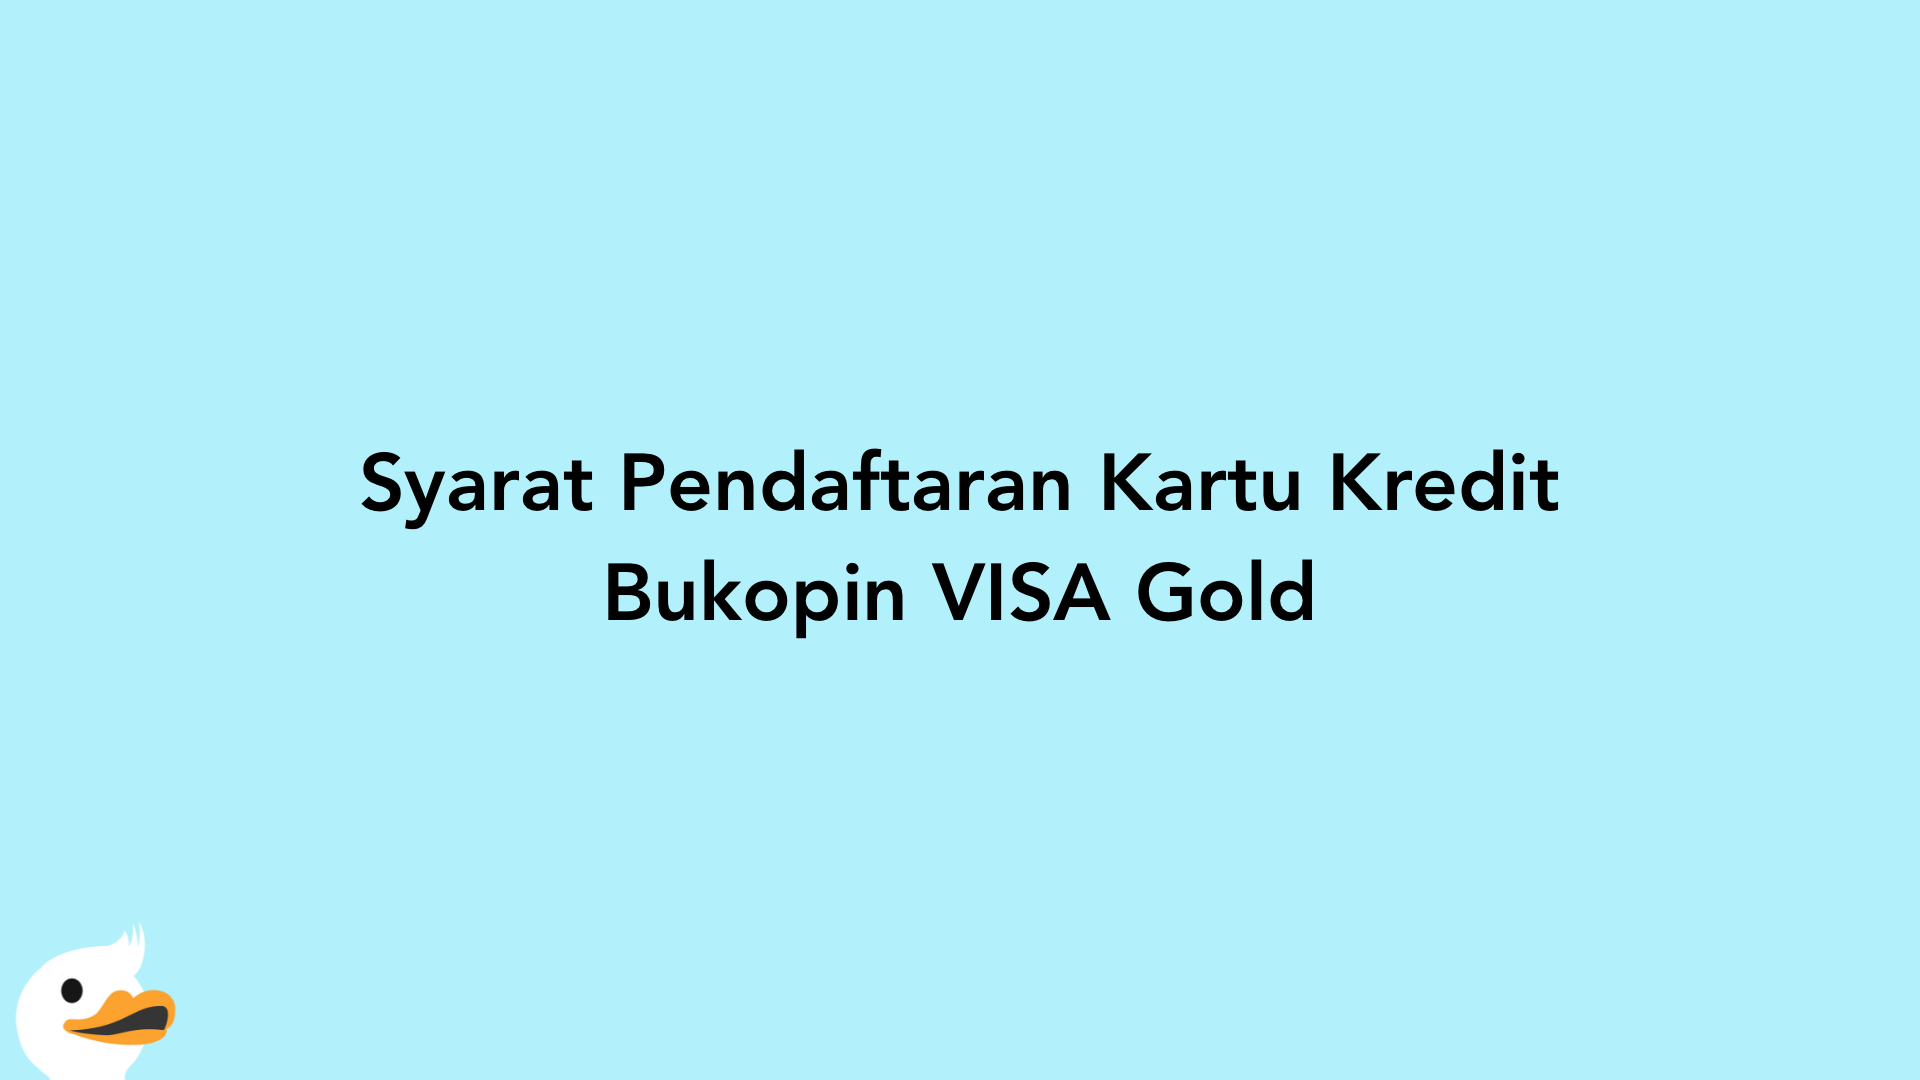 Syarat Pendaftaran Kartu Kredit Bukopin VISA Gold